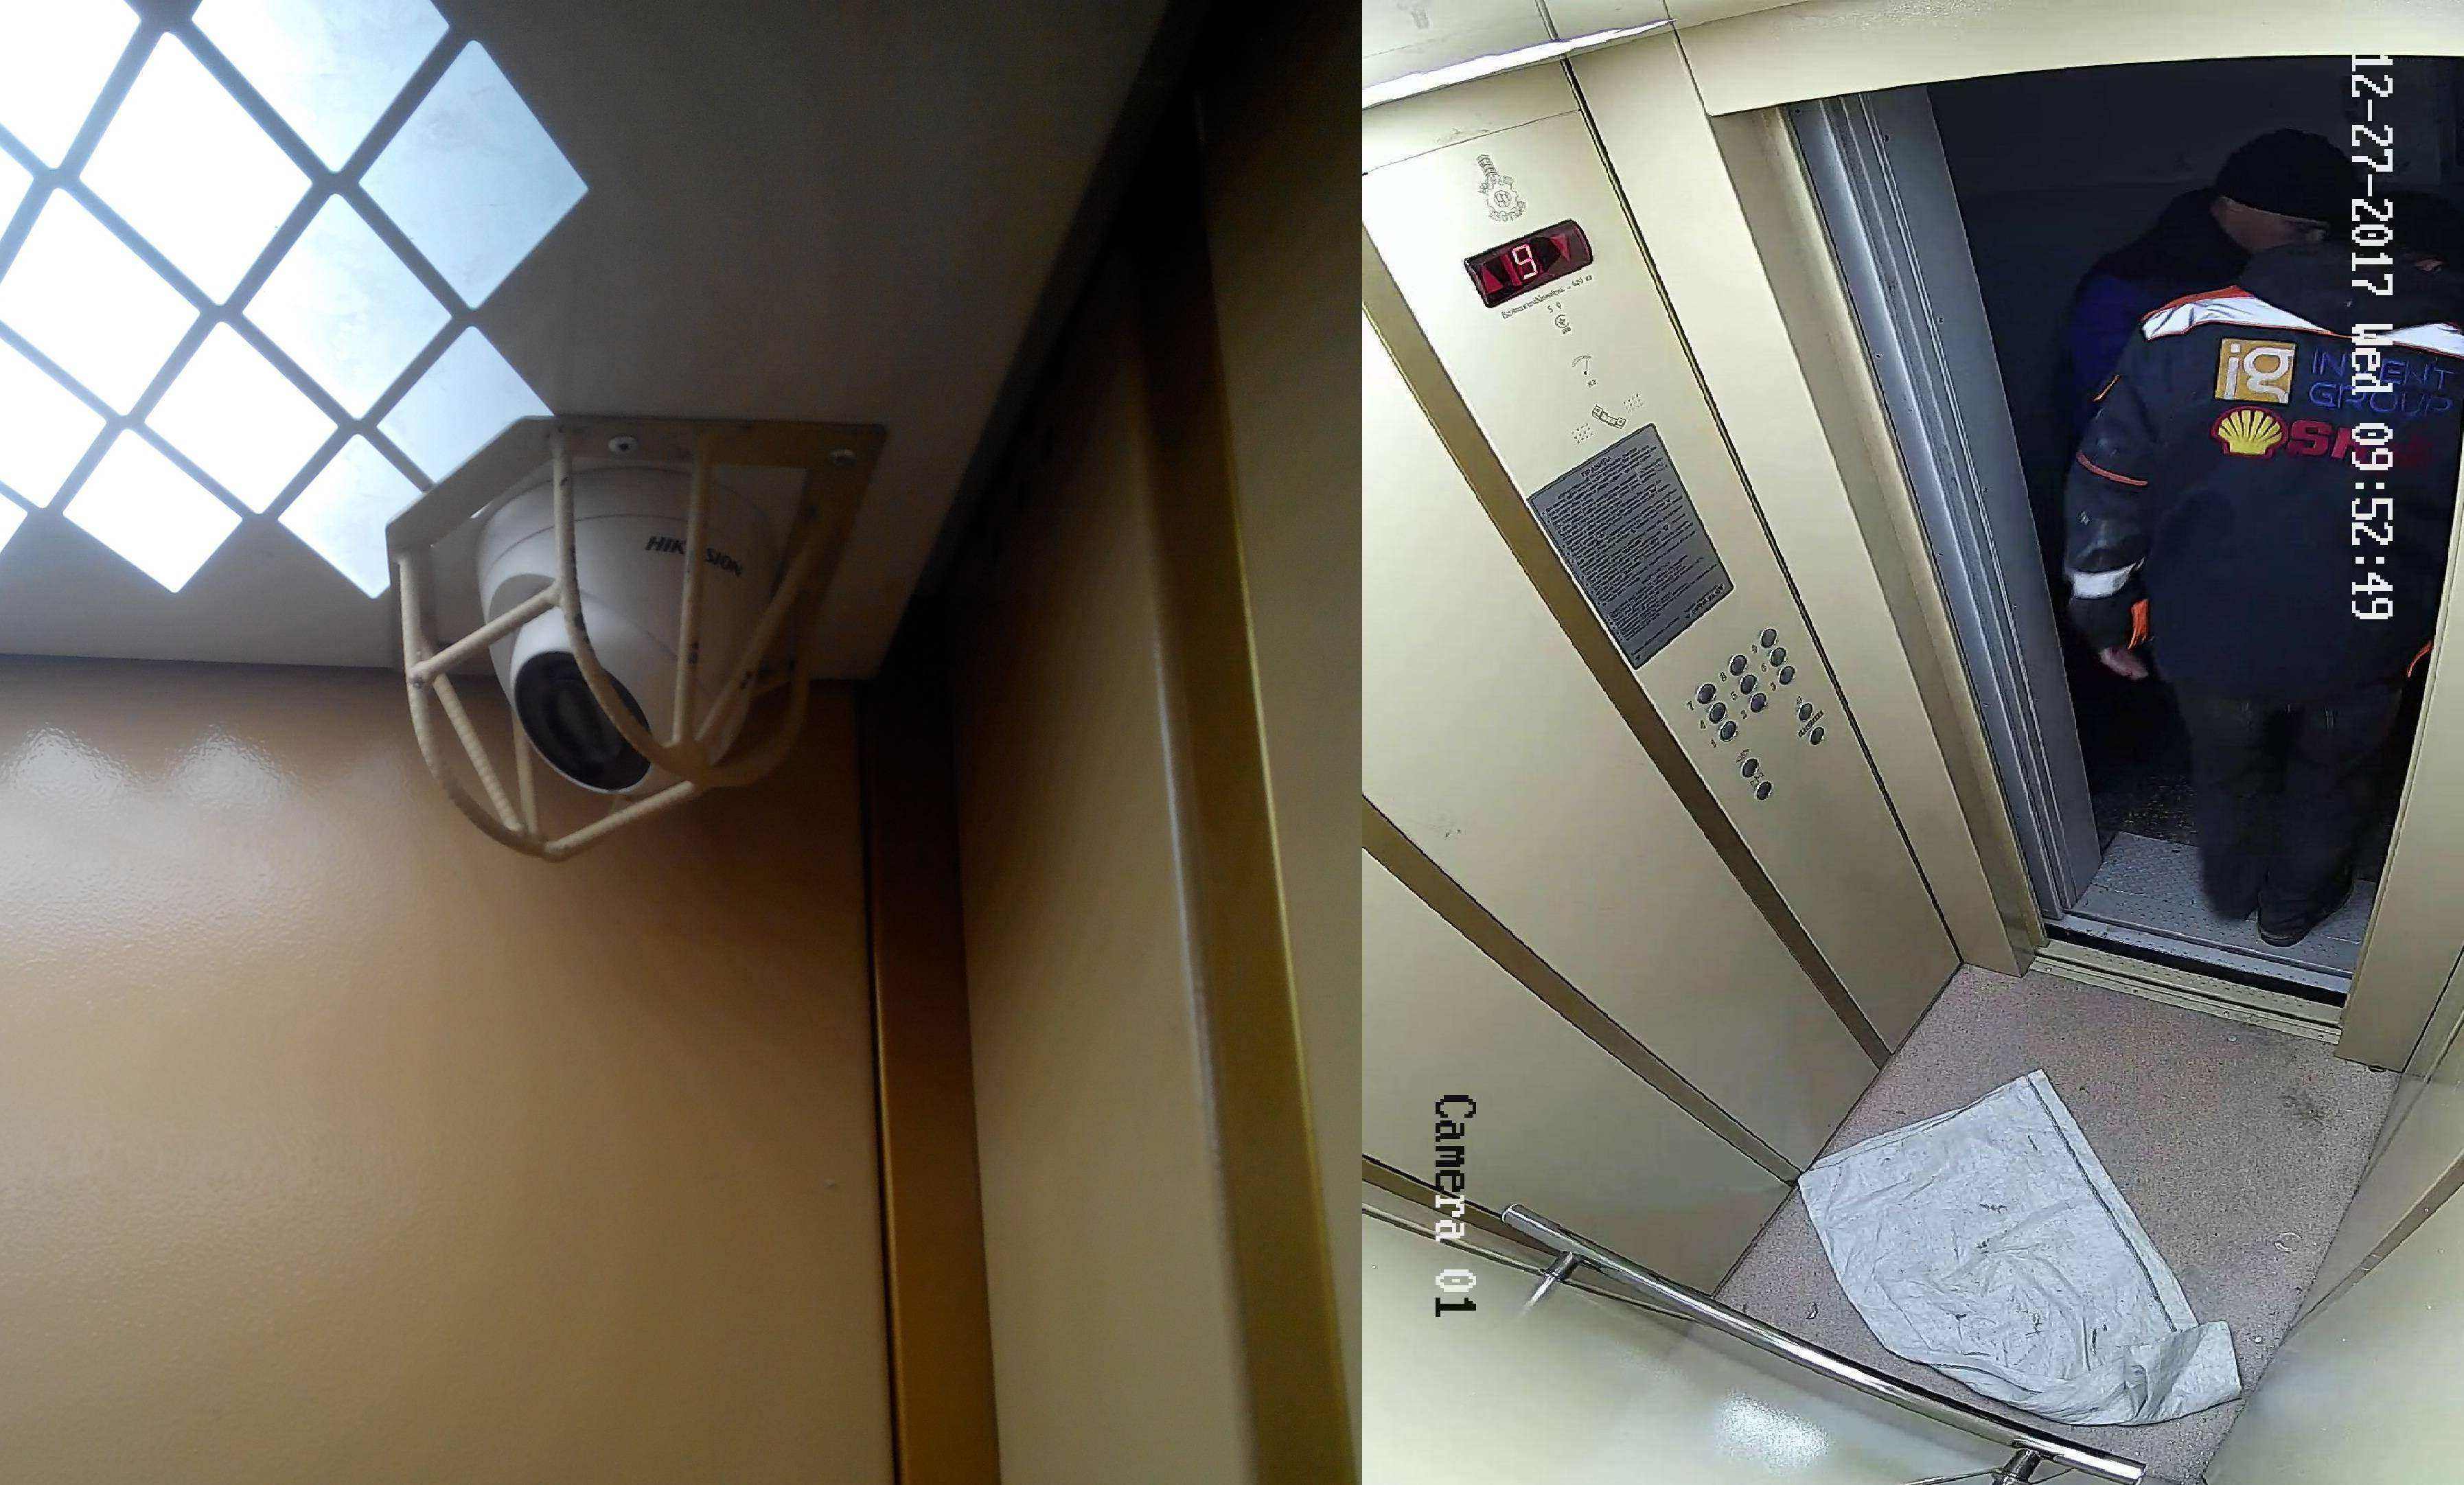 Устанавливаем камеры видеонаблюдения в подъезде многоквартирного дома: полезные советы по выбору оборудования, монтажу камер, и их настройке